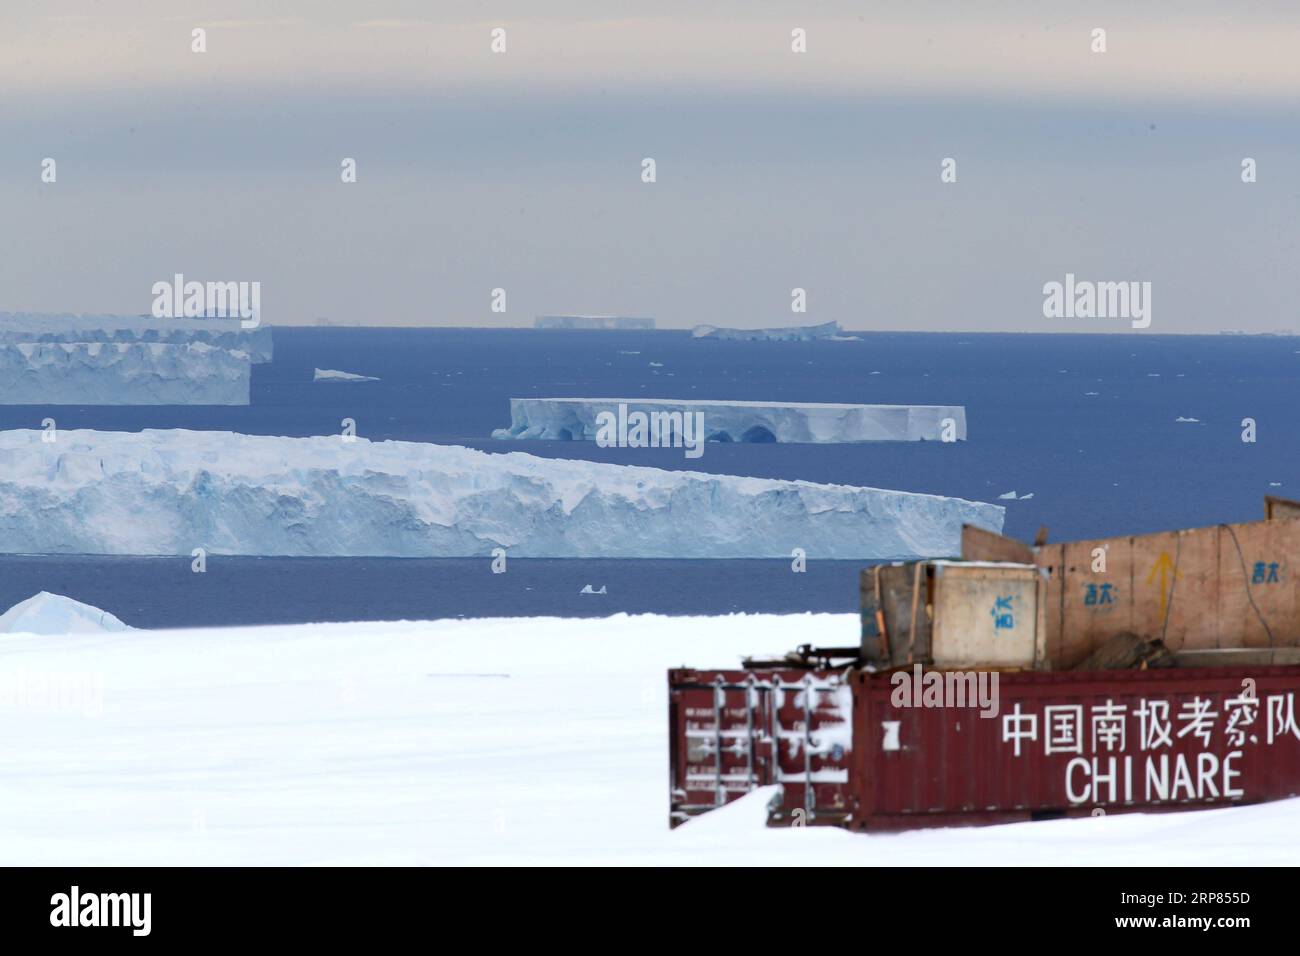 (190218) -- AN BORD VON XUELONG, 18. Februar 2019 (Xinhua) -- Foto aufgenommen am 10. Februar 2019 zeigt Eisberge auf dem Meer in der Nähe der Zhongshan Station, einer chinesischen Forschungsbasis in der Antarktis. Der Bahnhof Zhongshan wurde im Februar 1989 eingerichtet. Im Umkreis von zehn Kilometern zur Station sind Eisschilde, Gletscher und Eisberge zu sehen. (Xinhua/Liu Shiping) ANTARKTIS-CHINA-ZHONGSHAN STATION PUBLICATIONxNOTxINxCHN Stockfoto